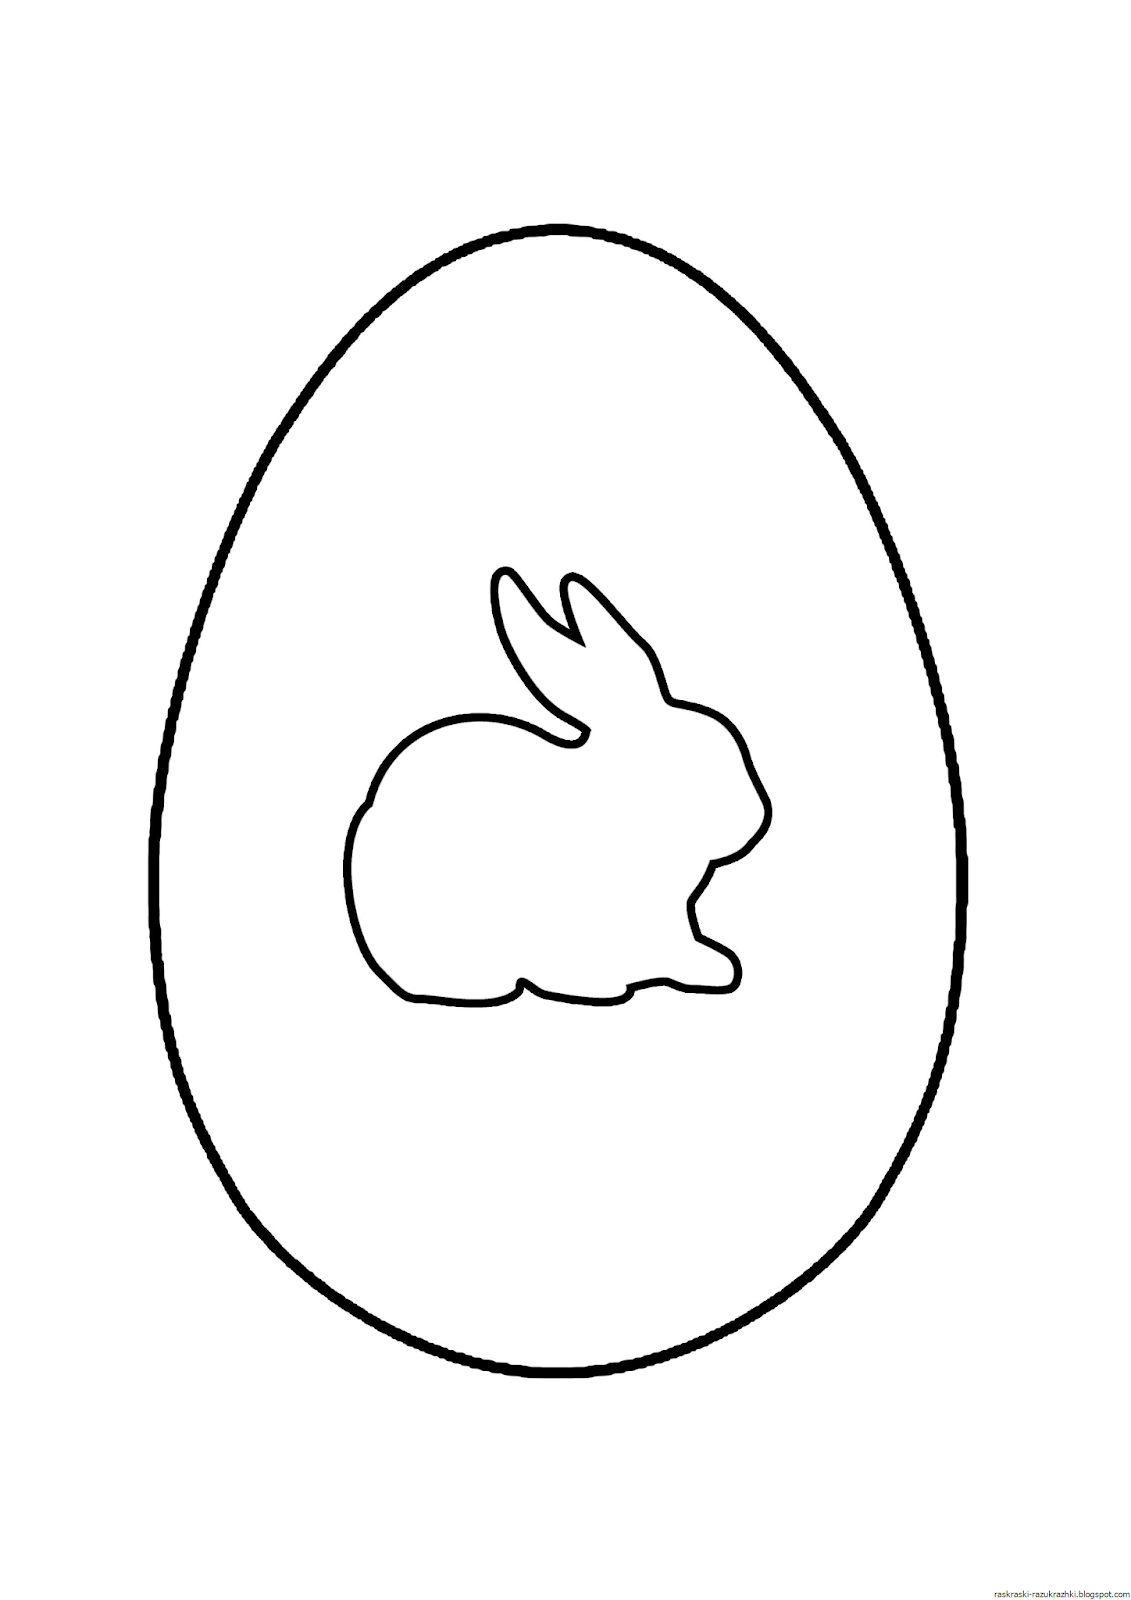 Яйцо трафарет для вырезания. Яйцо для раскрашивания. Яйцо трафарет. Пасхальное яйцо раскраска. Яйцо раскраска для детей.